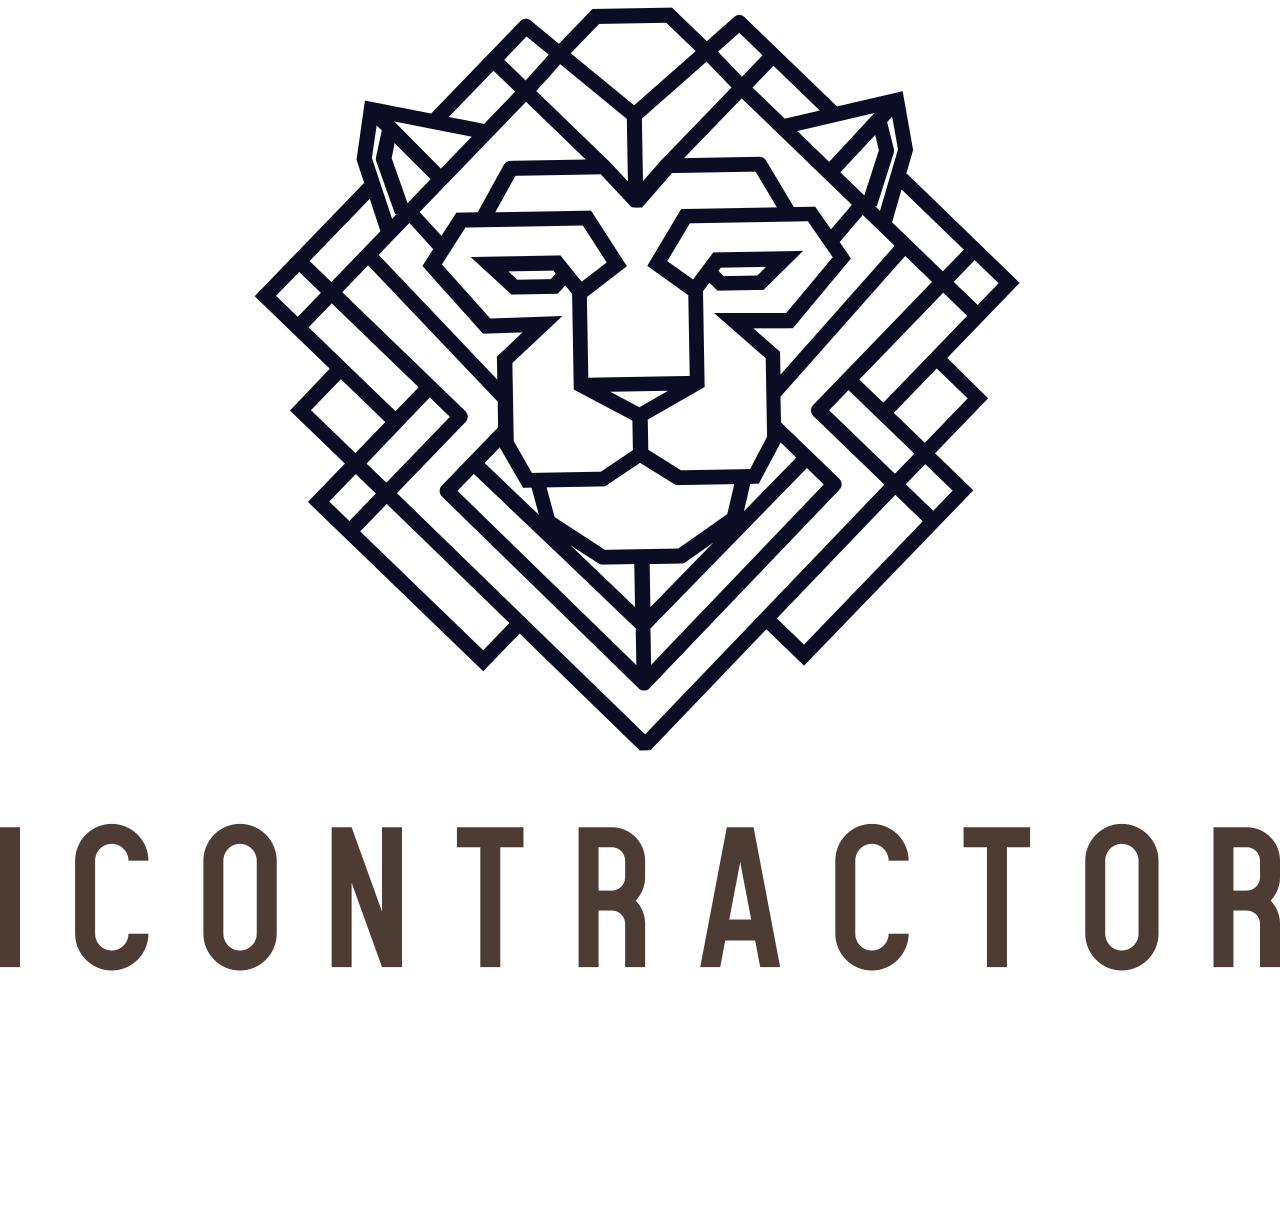 Icontractor
's logo